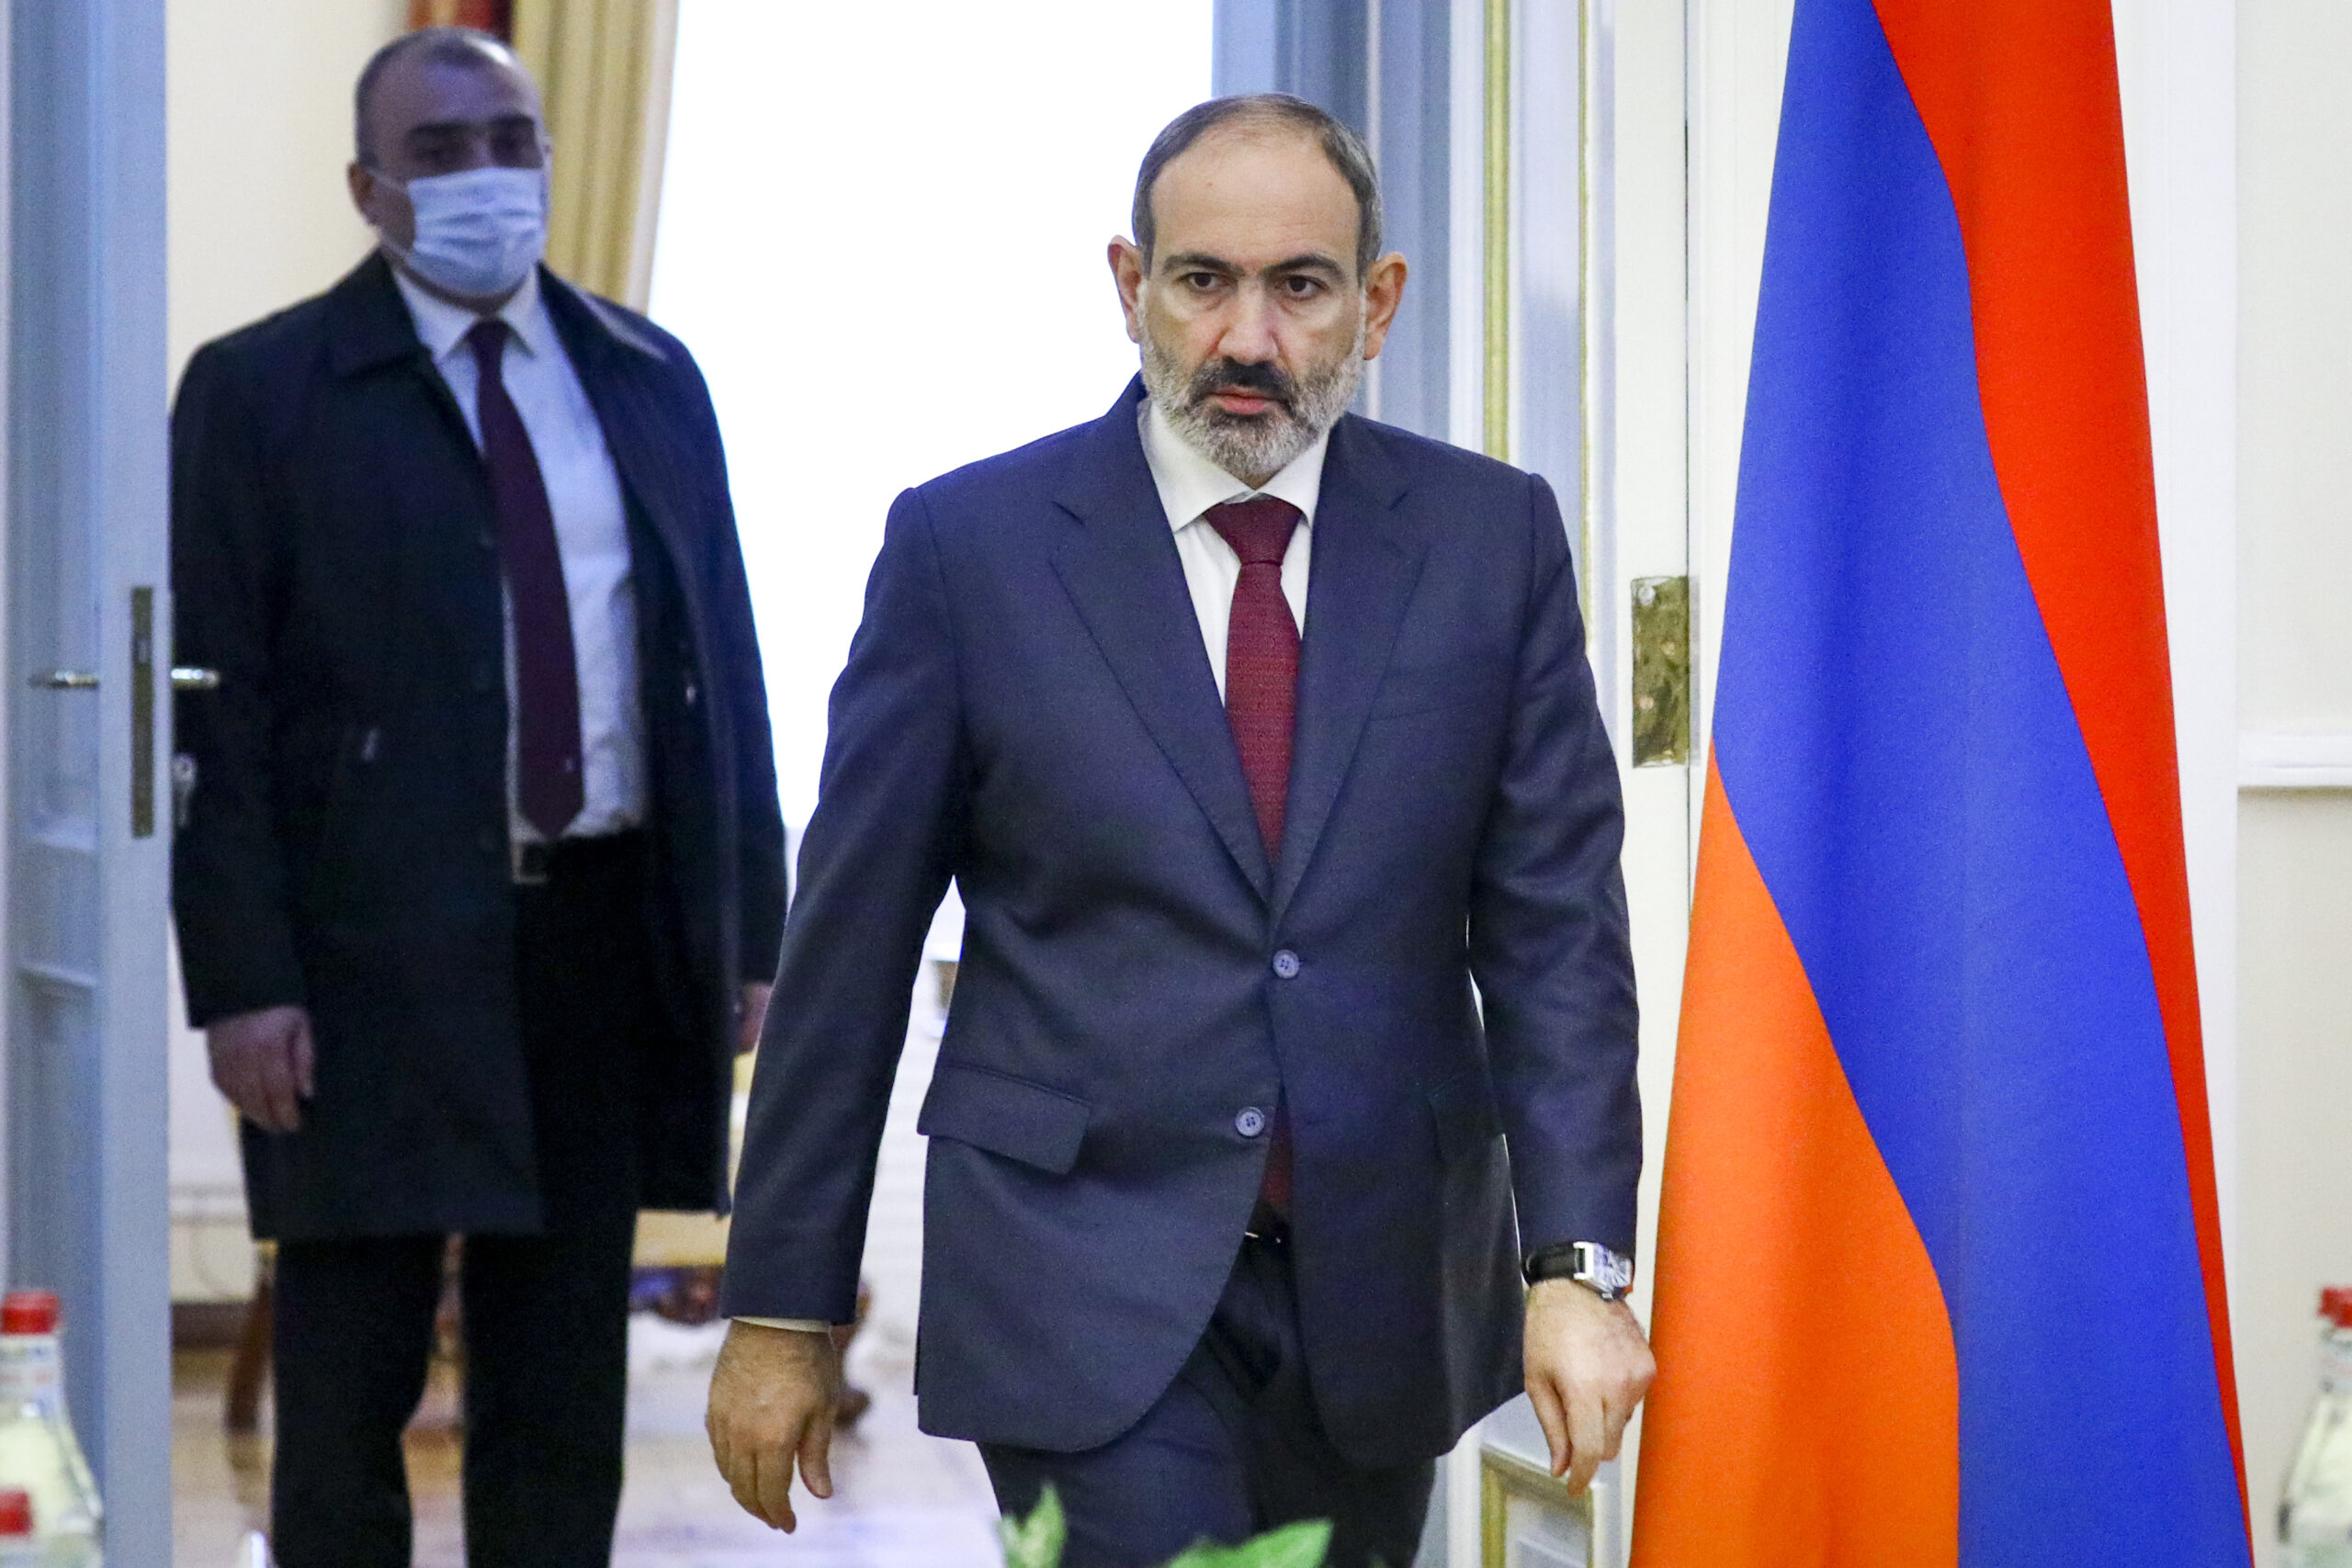 Αρμενία: Ο πρωθυπουργός Πασινιάν δηλώνει ότι μια παραίτησή του δεν θα έλυνε τα προβλήματα της χώρας